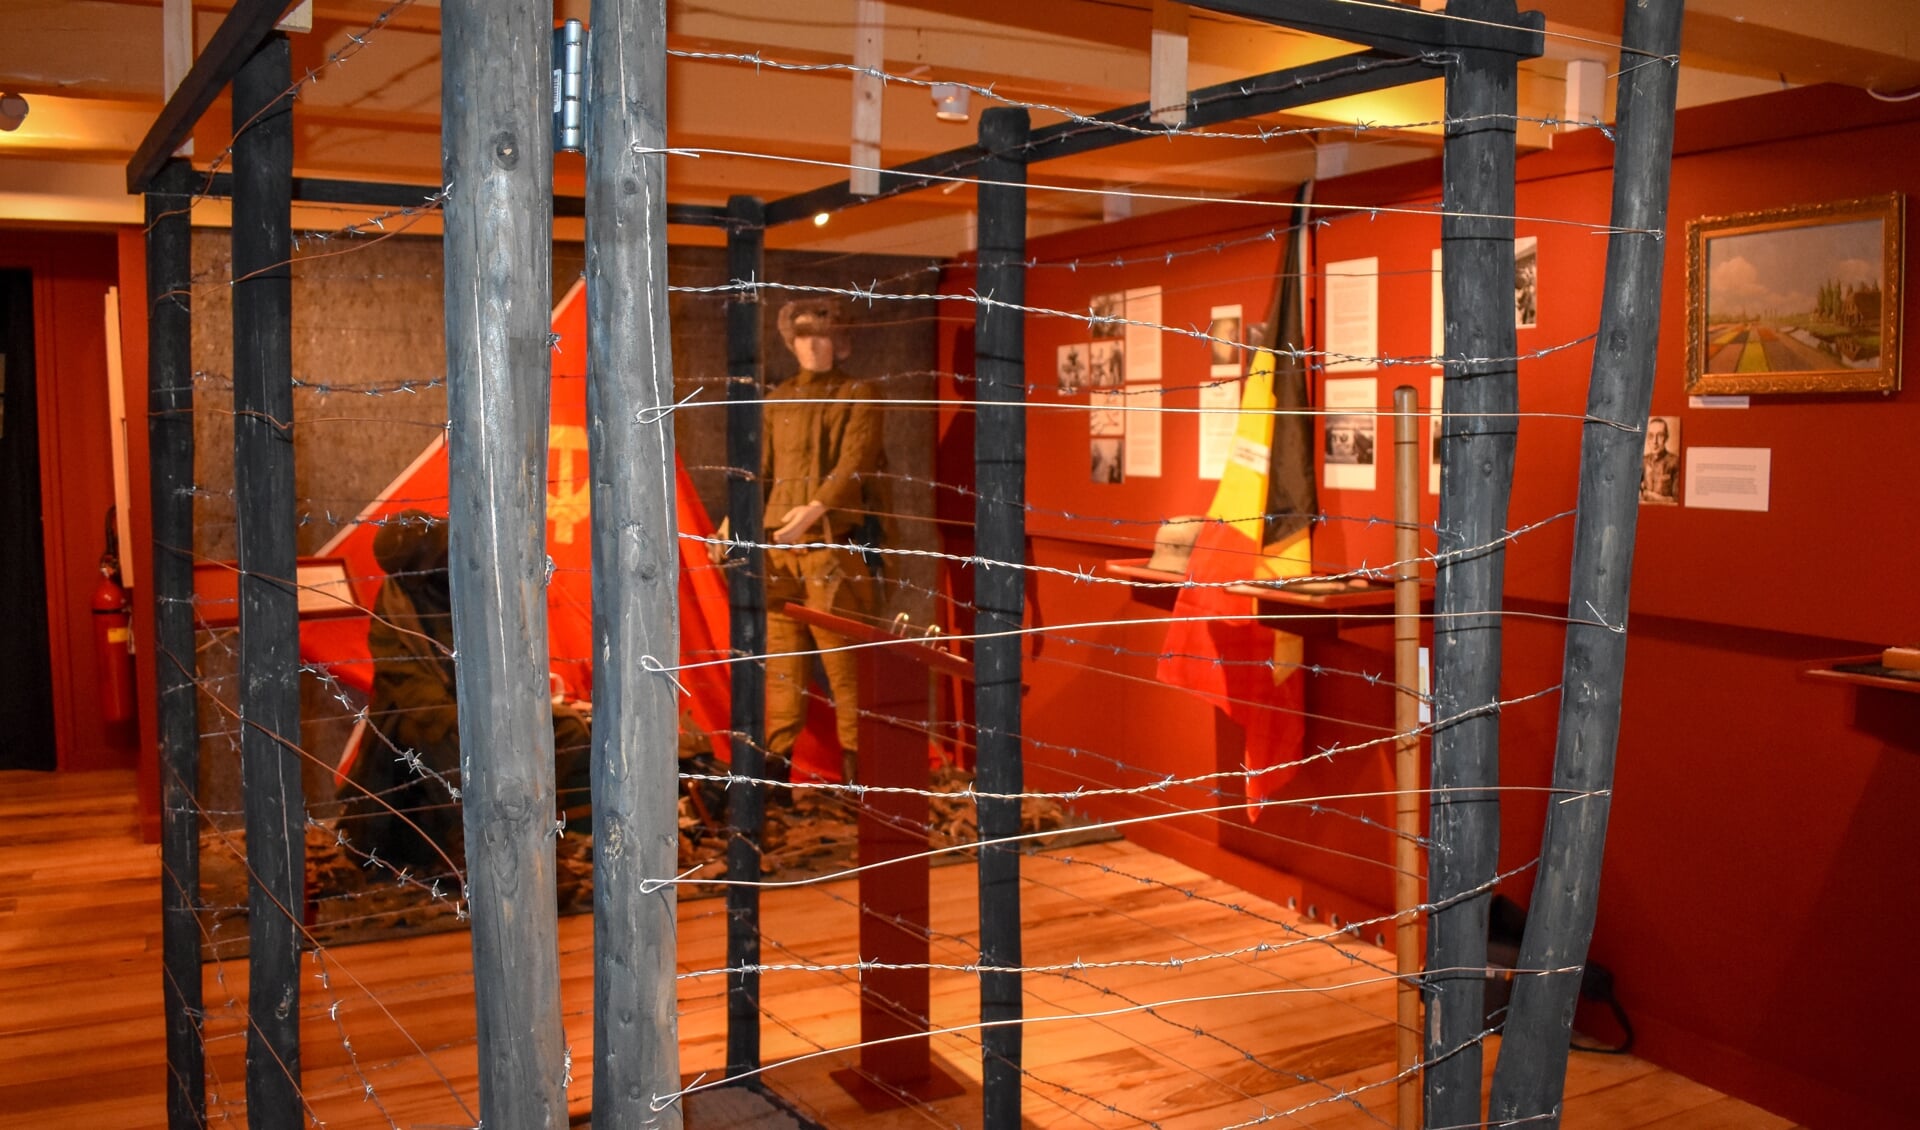 In het Titus Brandsma Museum is de 'rozentuin' nagebootst, een door prikkeldraad omheind perk zoals zich dat in perk Amersfoort bevond. Gevangenen werden hierin opgesloten. Zie ook het filmpje over Titus Brandsma.